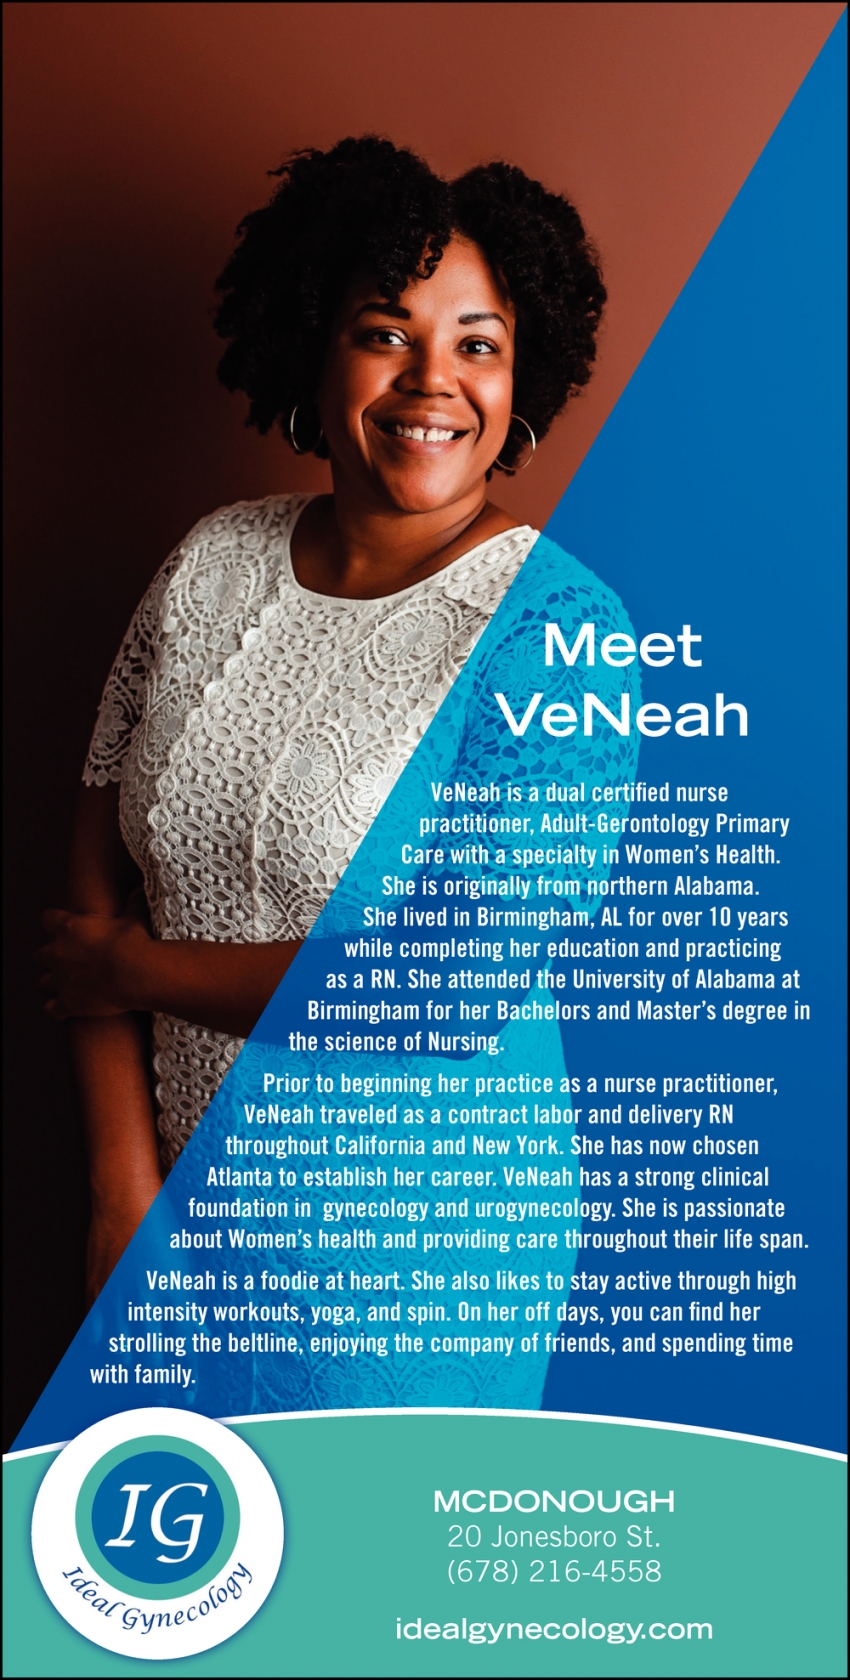 Meet VeNeah